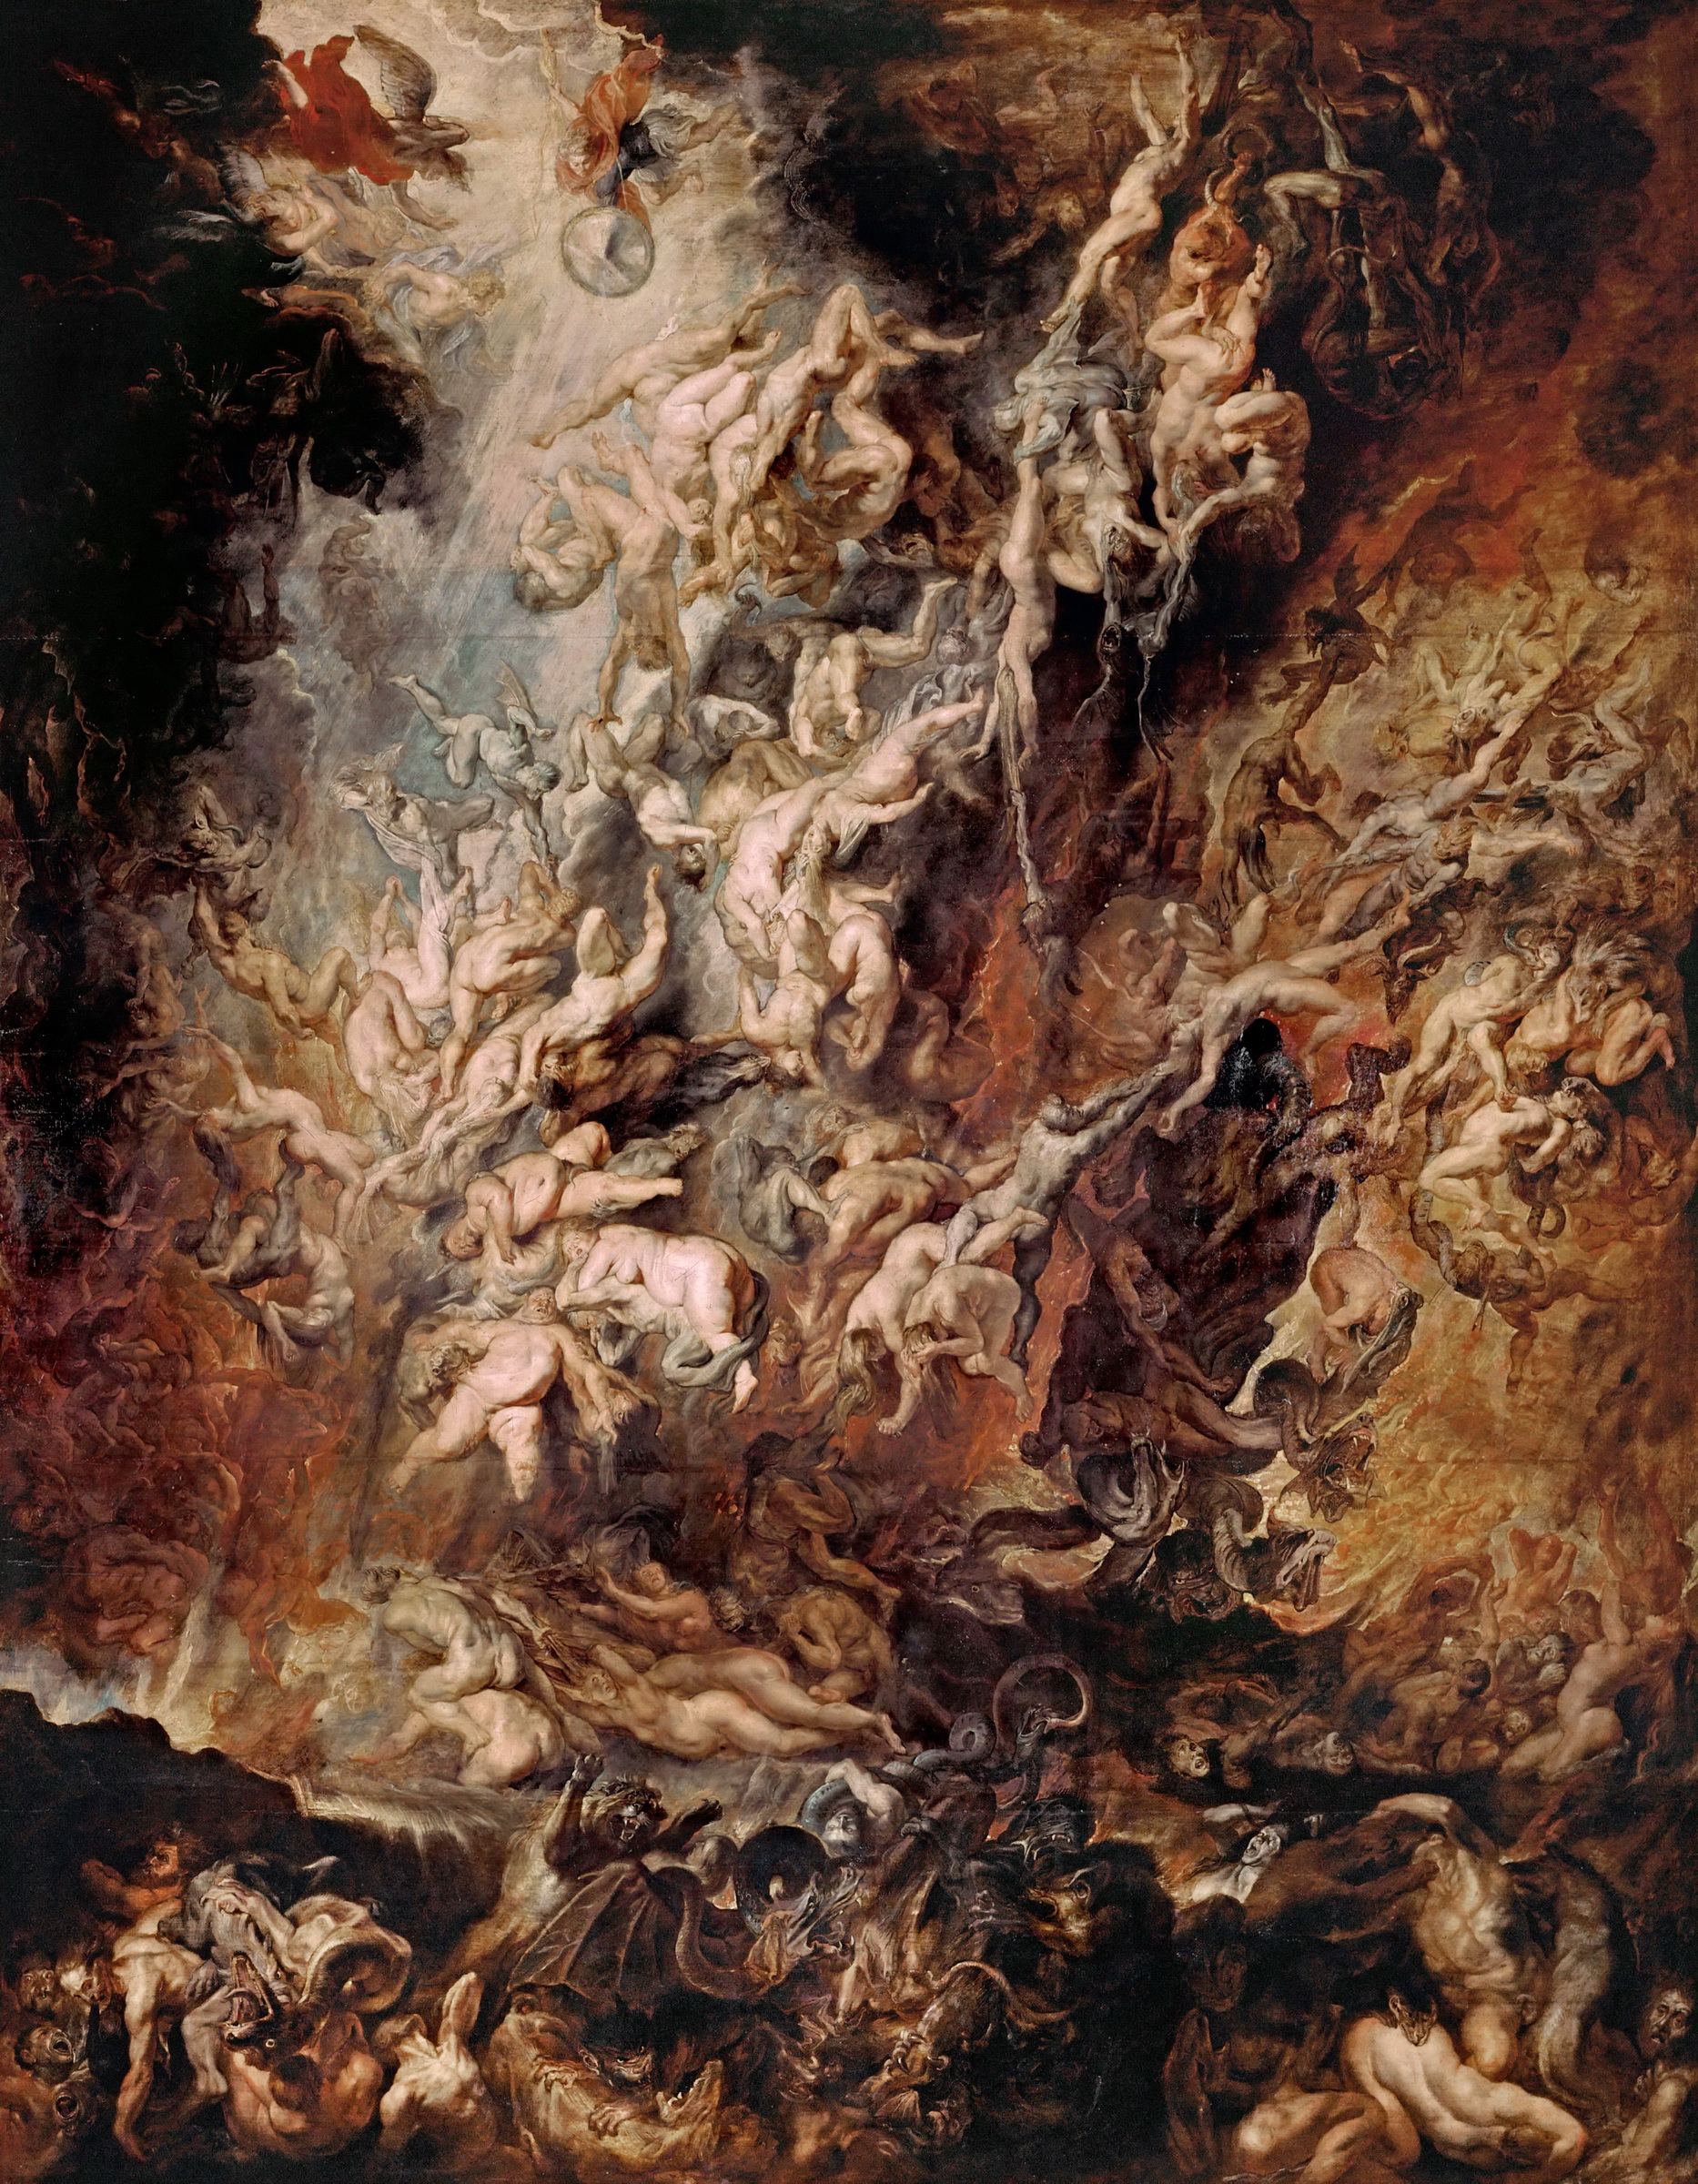 La caída de los malditos by Peter Paul Rubens - 1620 Pinacoteca Antigua de Múnich